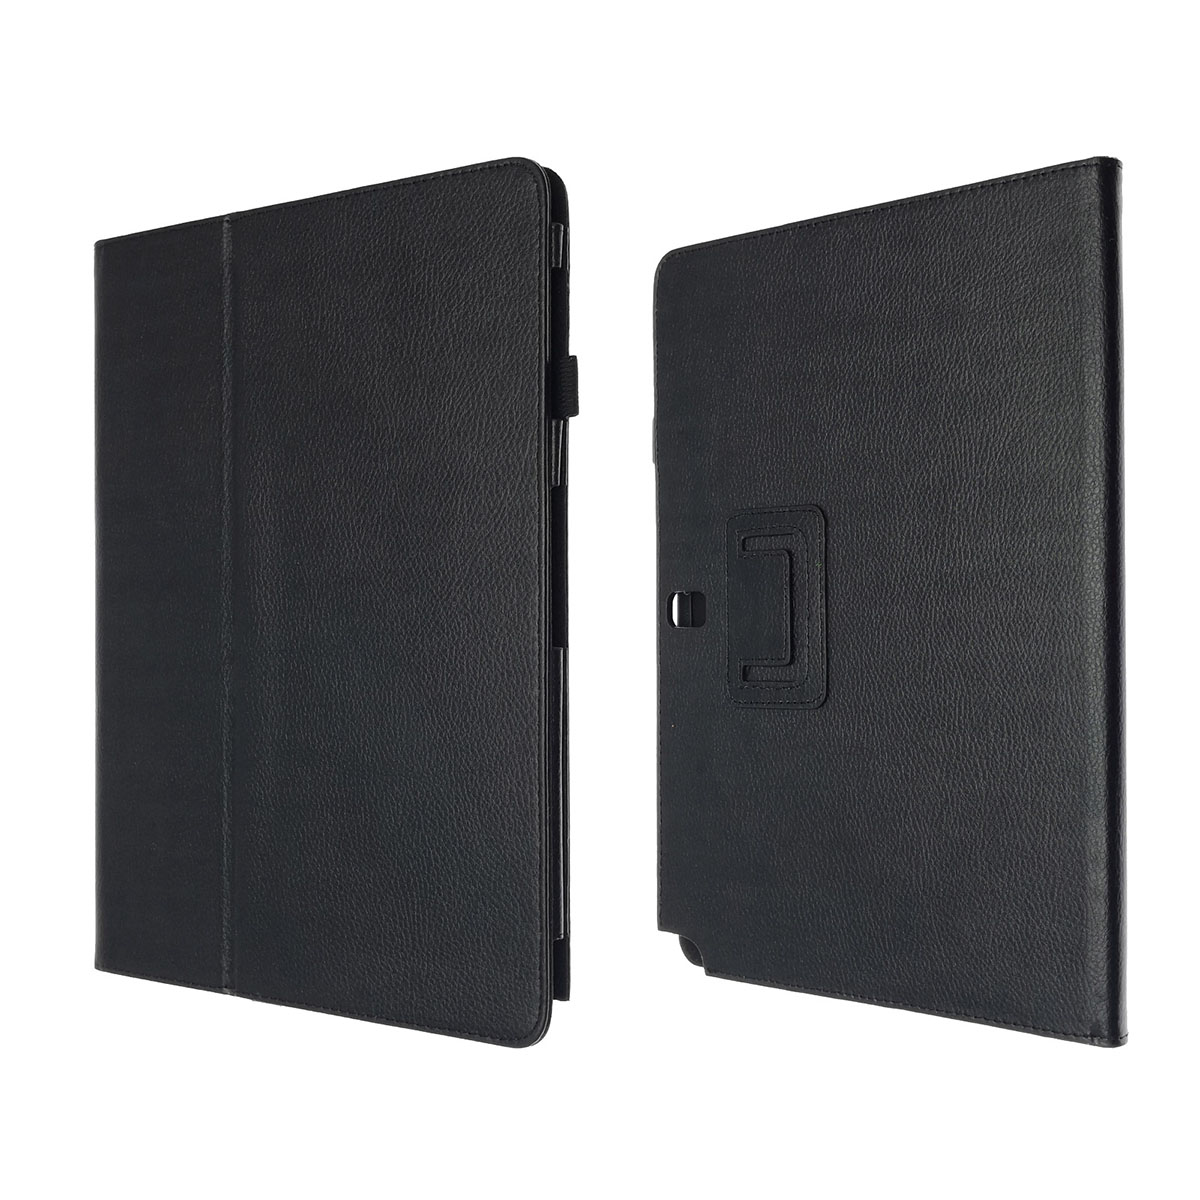 Чехол книжка для SAMSUNG Galaxy Note Pro 12.2 (SM-P900), экокожа, цвет черный.